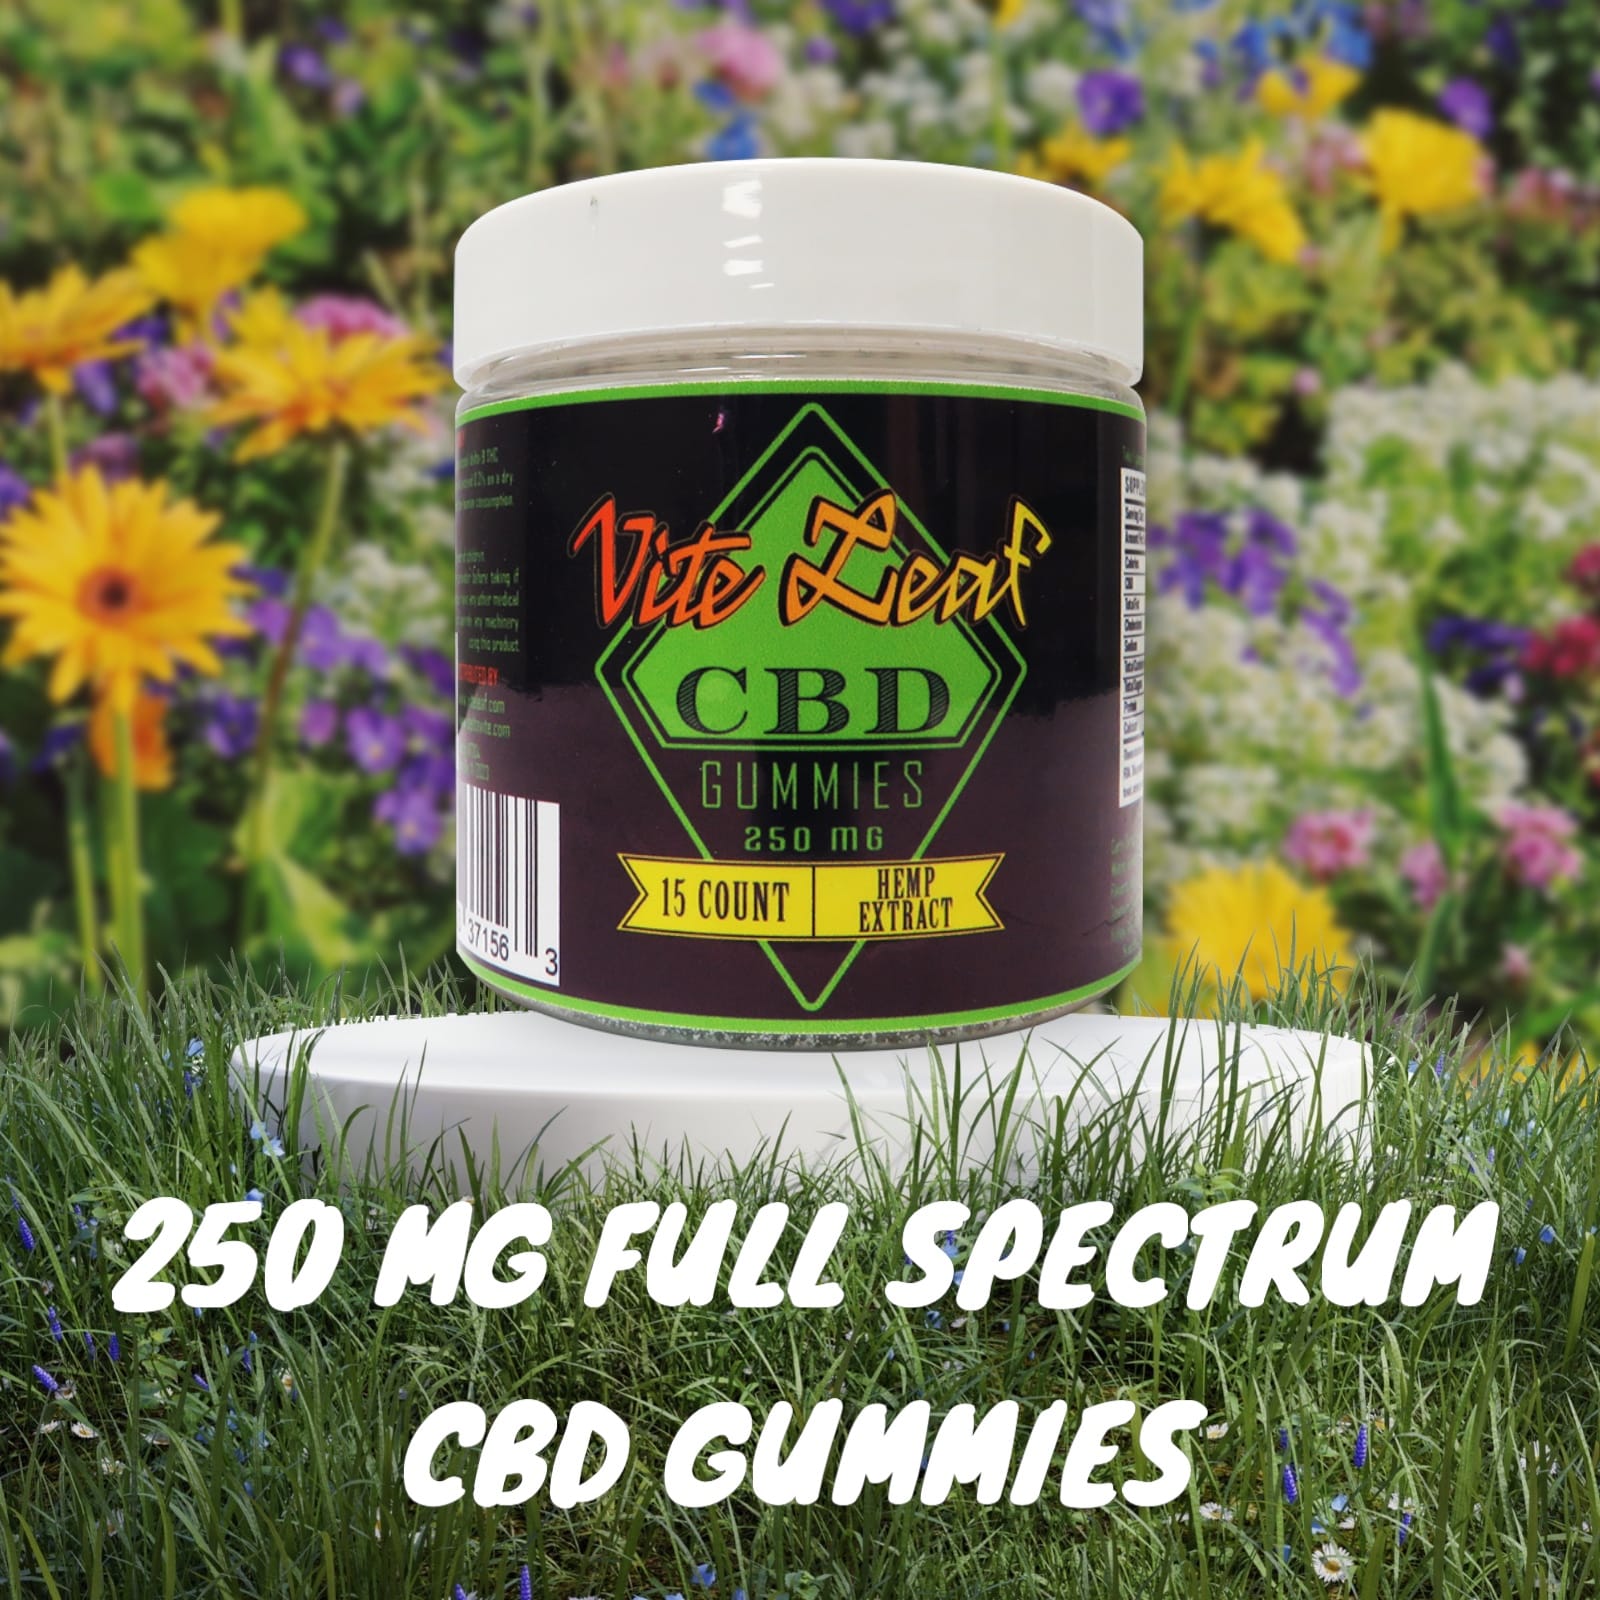 Full spectrum CBD gummies